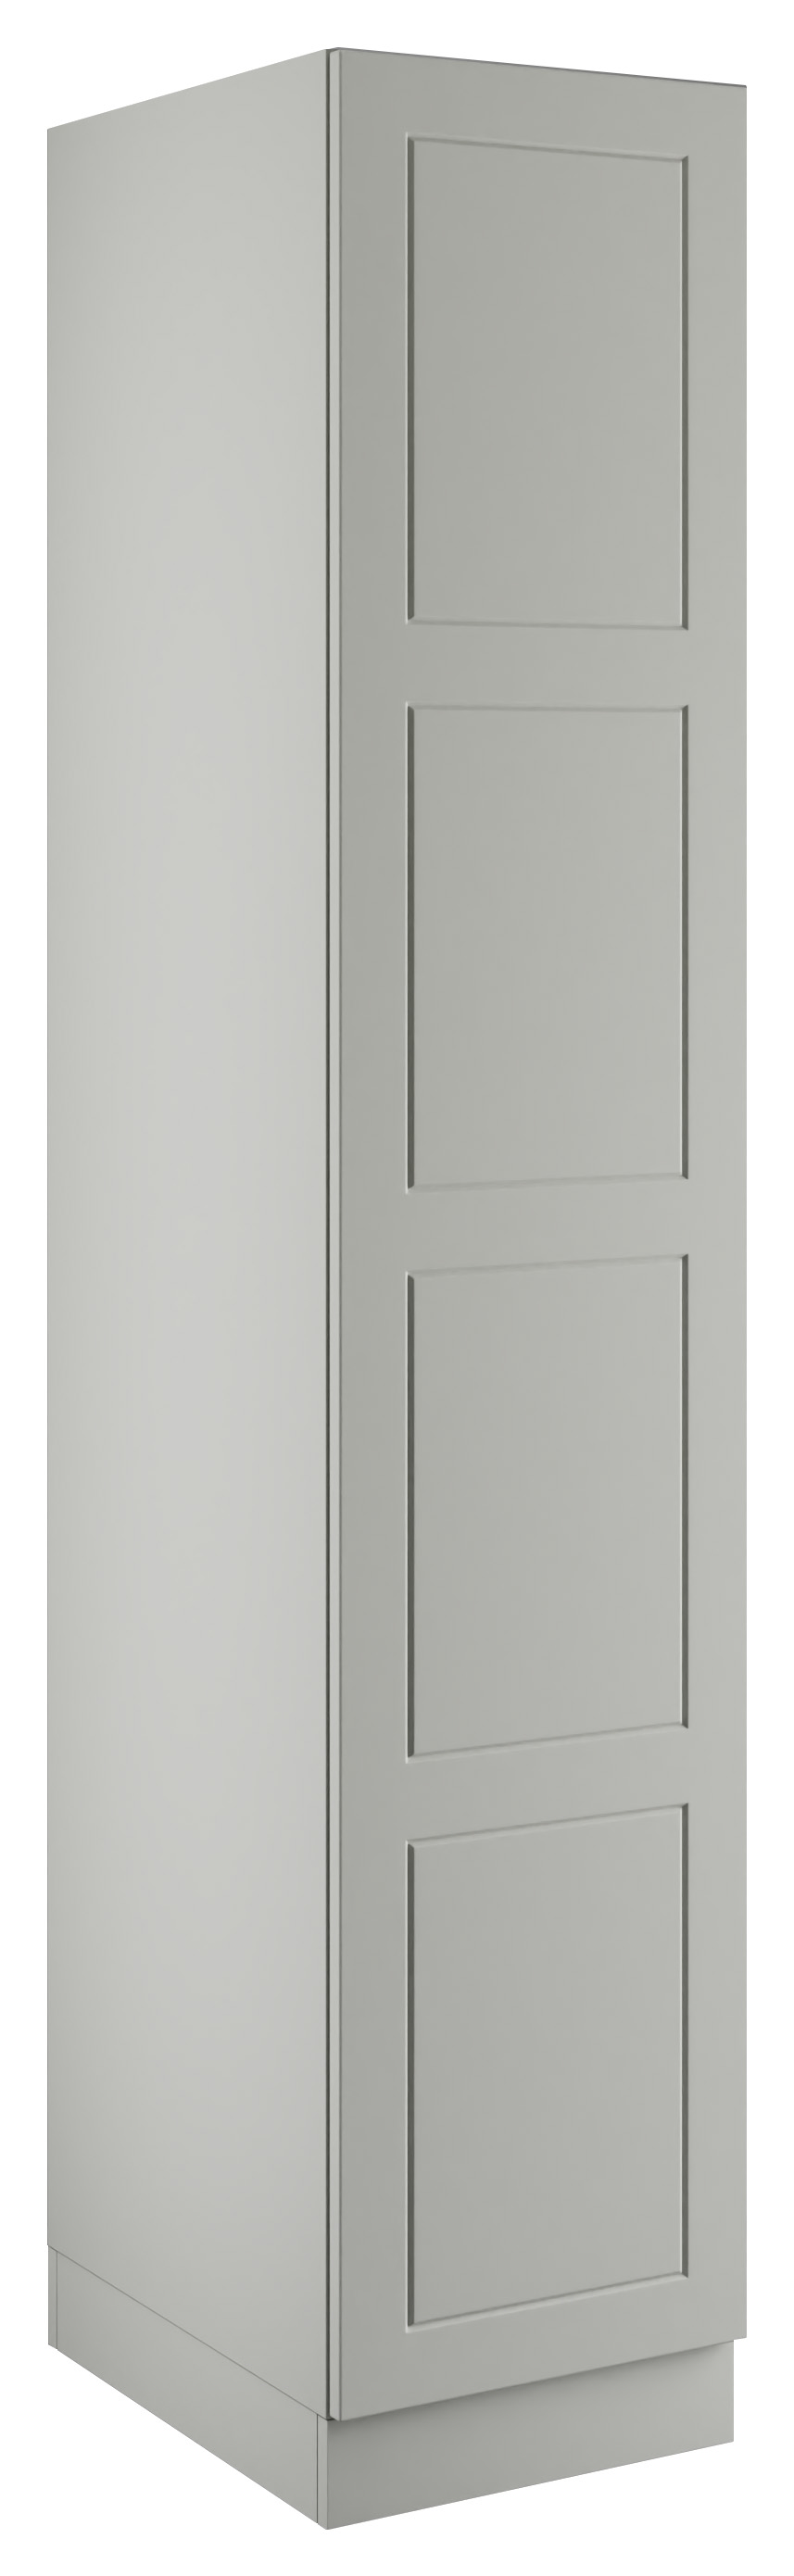 Bramham Light Grey Single Wardrobe with Double Rail - 450 x 2260 x 608mm